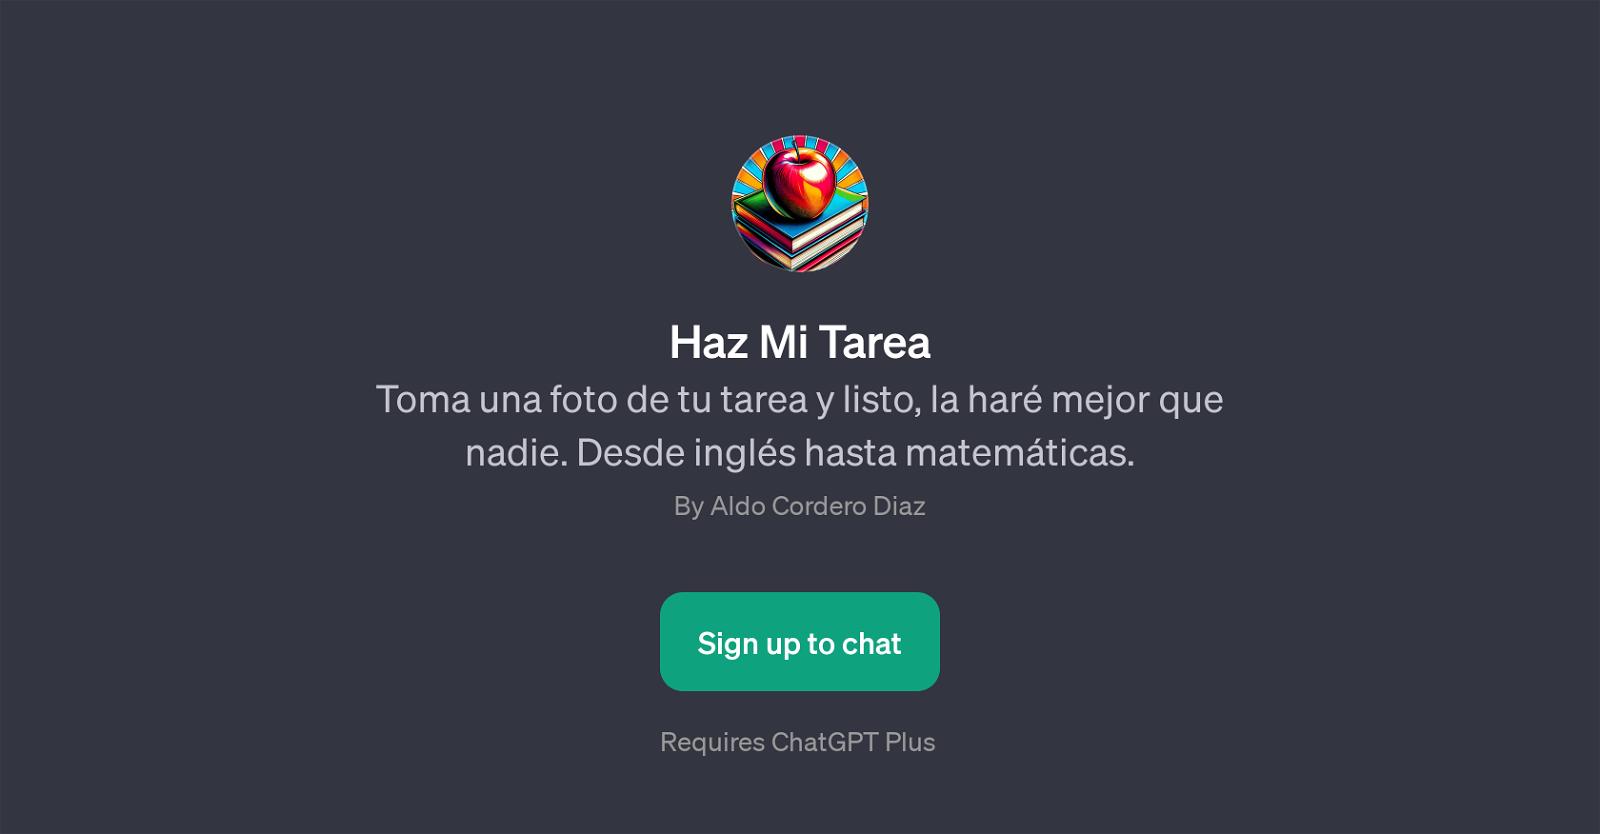 Haz Mi Tarea website